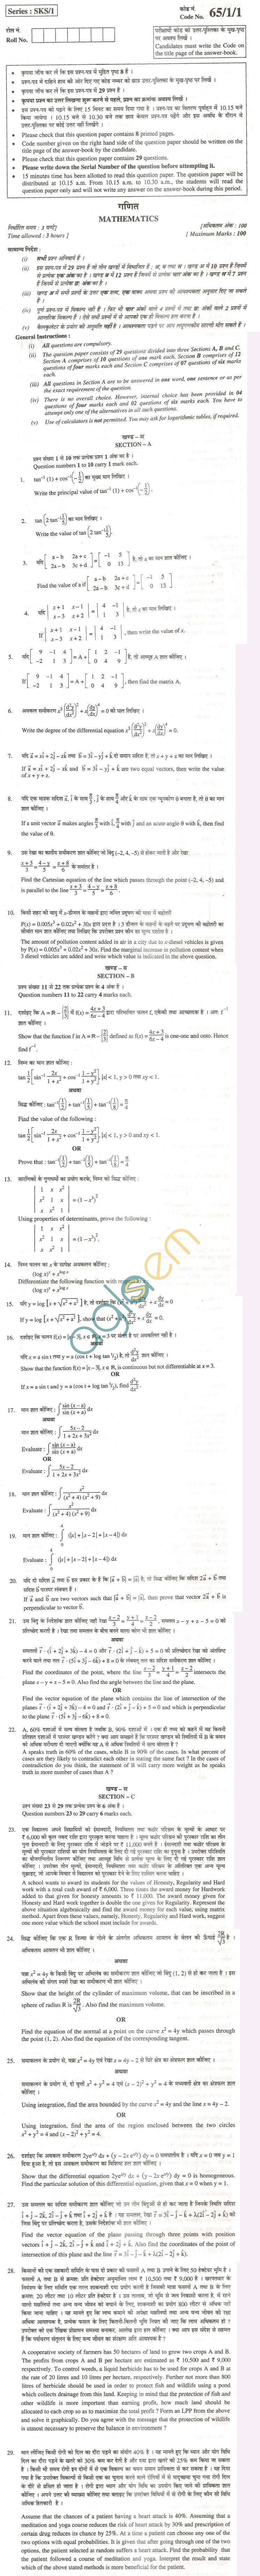 CBSE Board Exam 2013 Class XII Question Paper - Mathematics